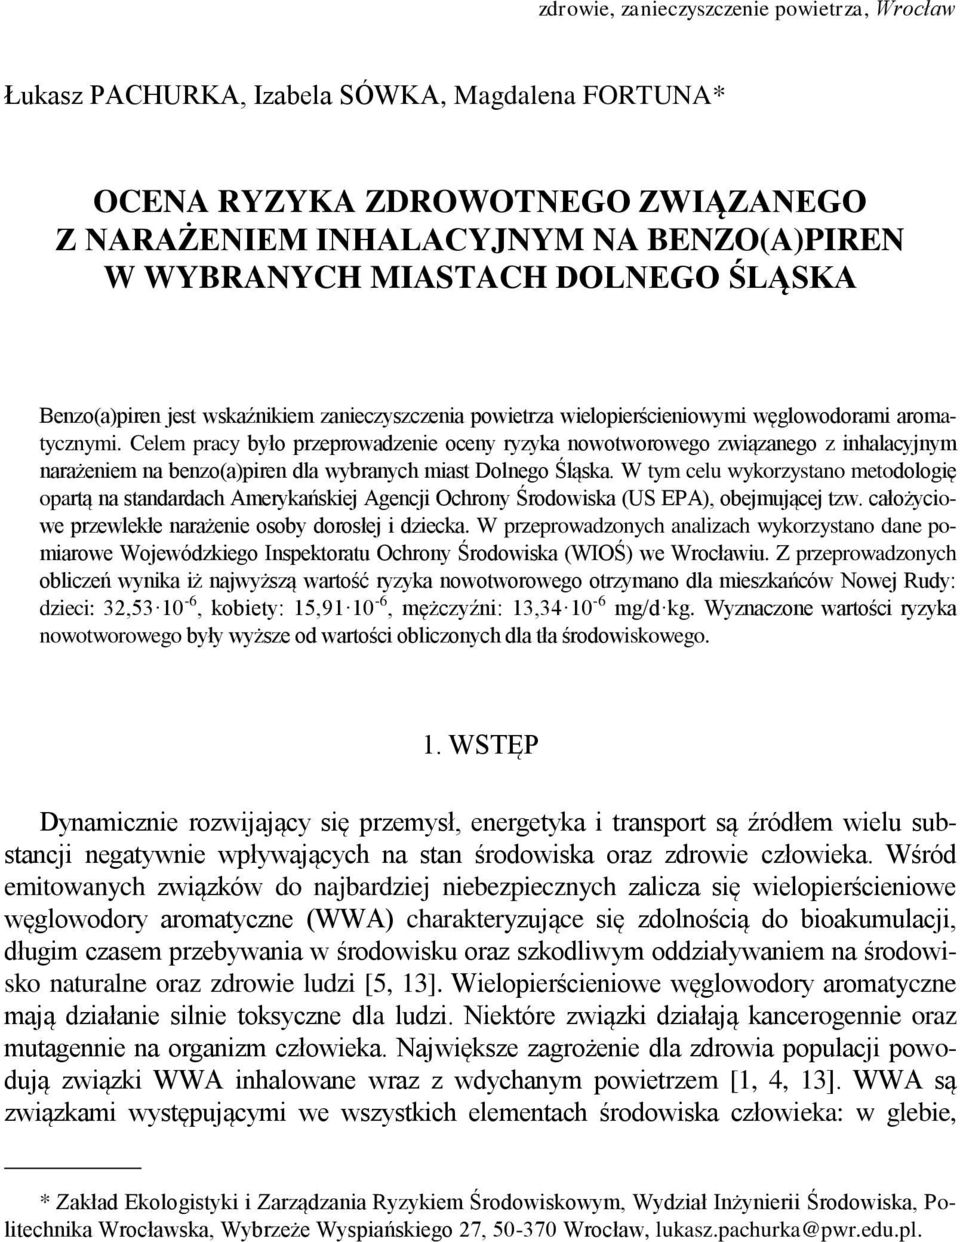 Celem pracy było przeprowadzenie oceny ryzyka nowotworowego związanego z inhalacyjnym narażeniem na benzo(a)piren dla wybranych miast Dolnego Śląska.